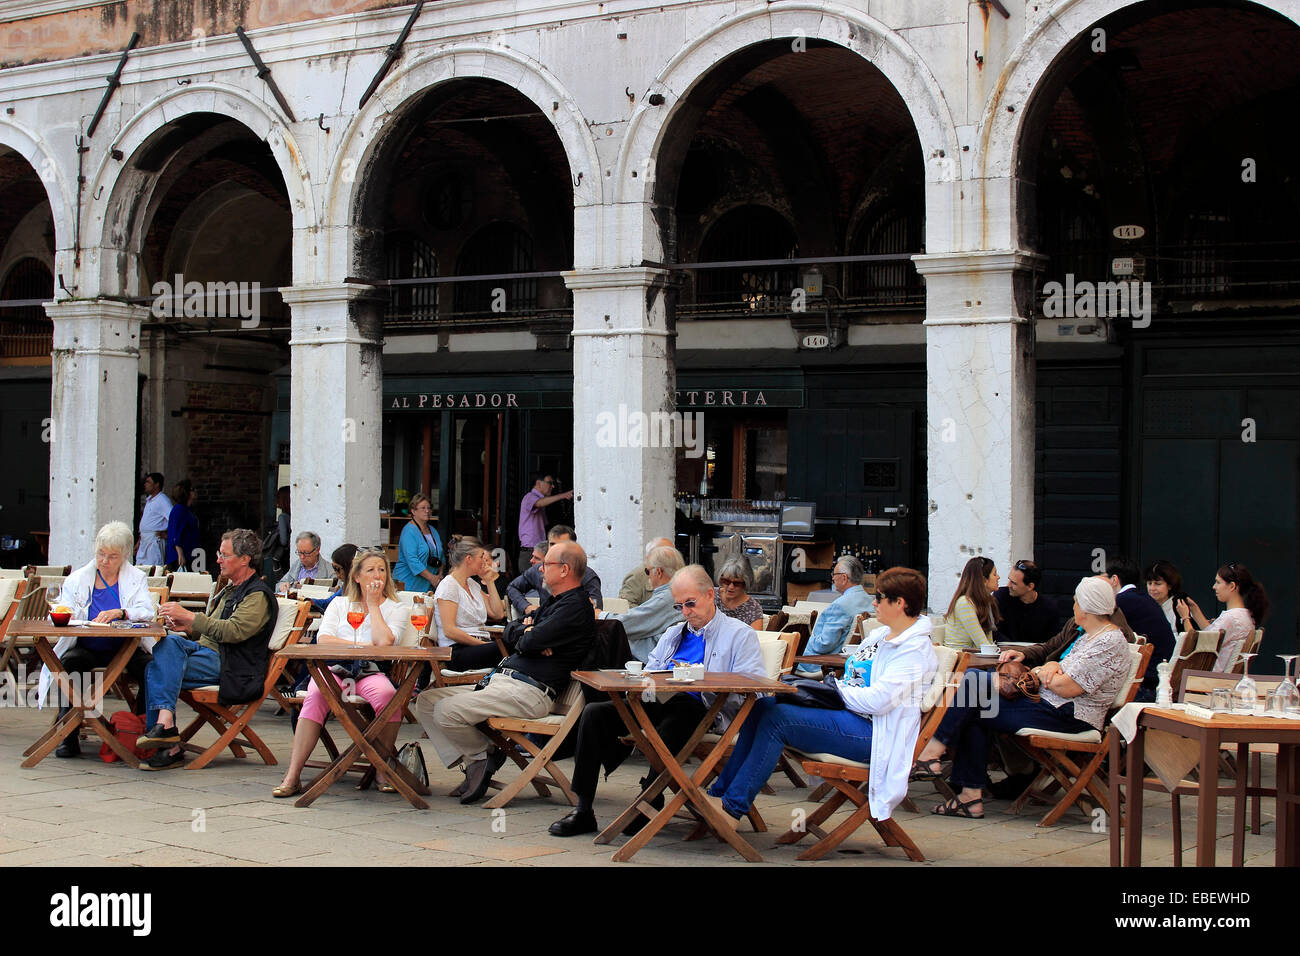 Marché du Rialto Venise Italie touristes dans un café Banque D'Images